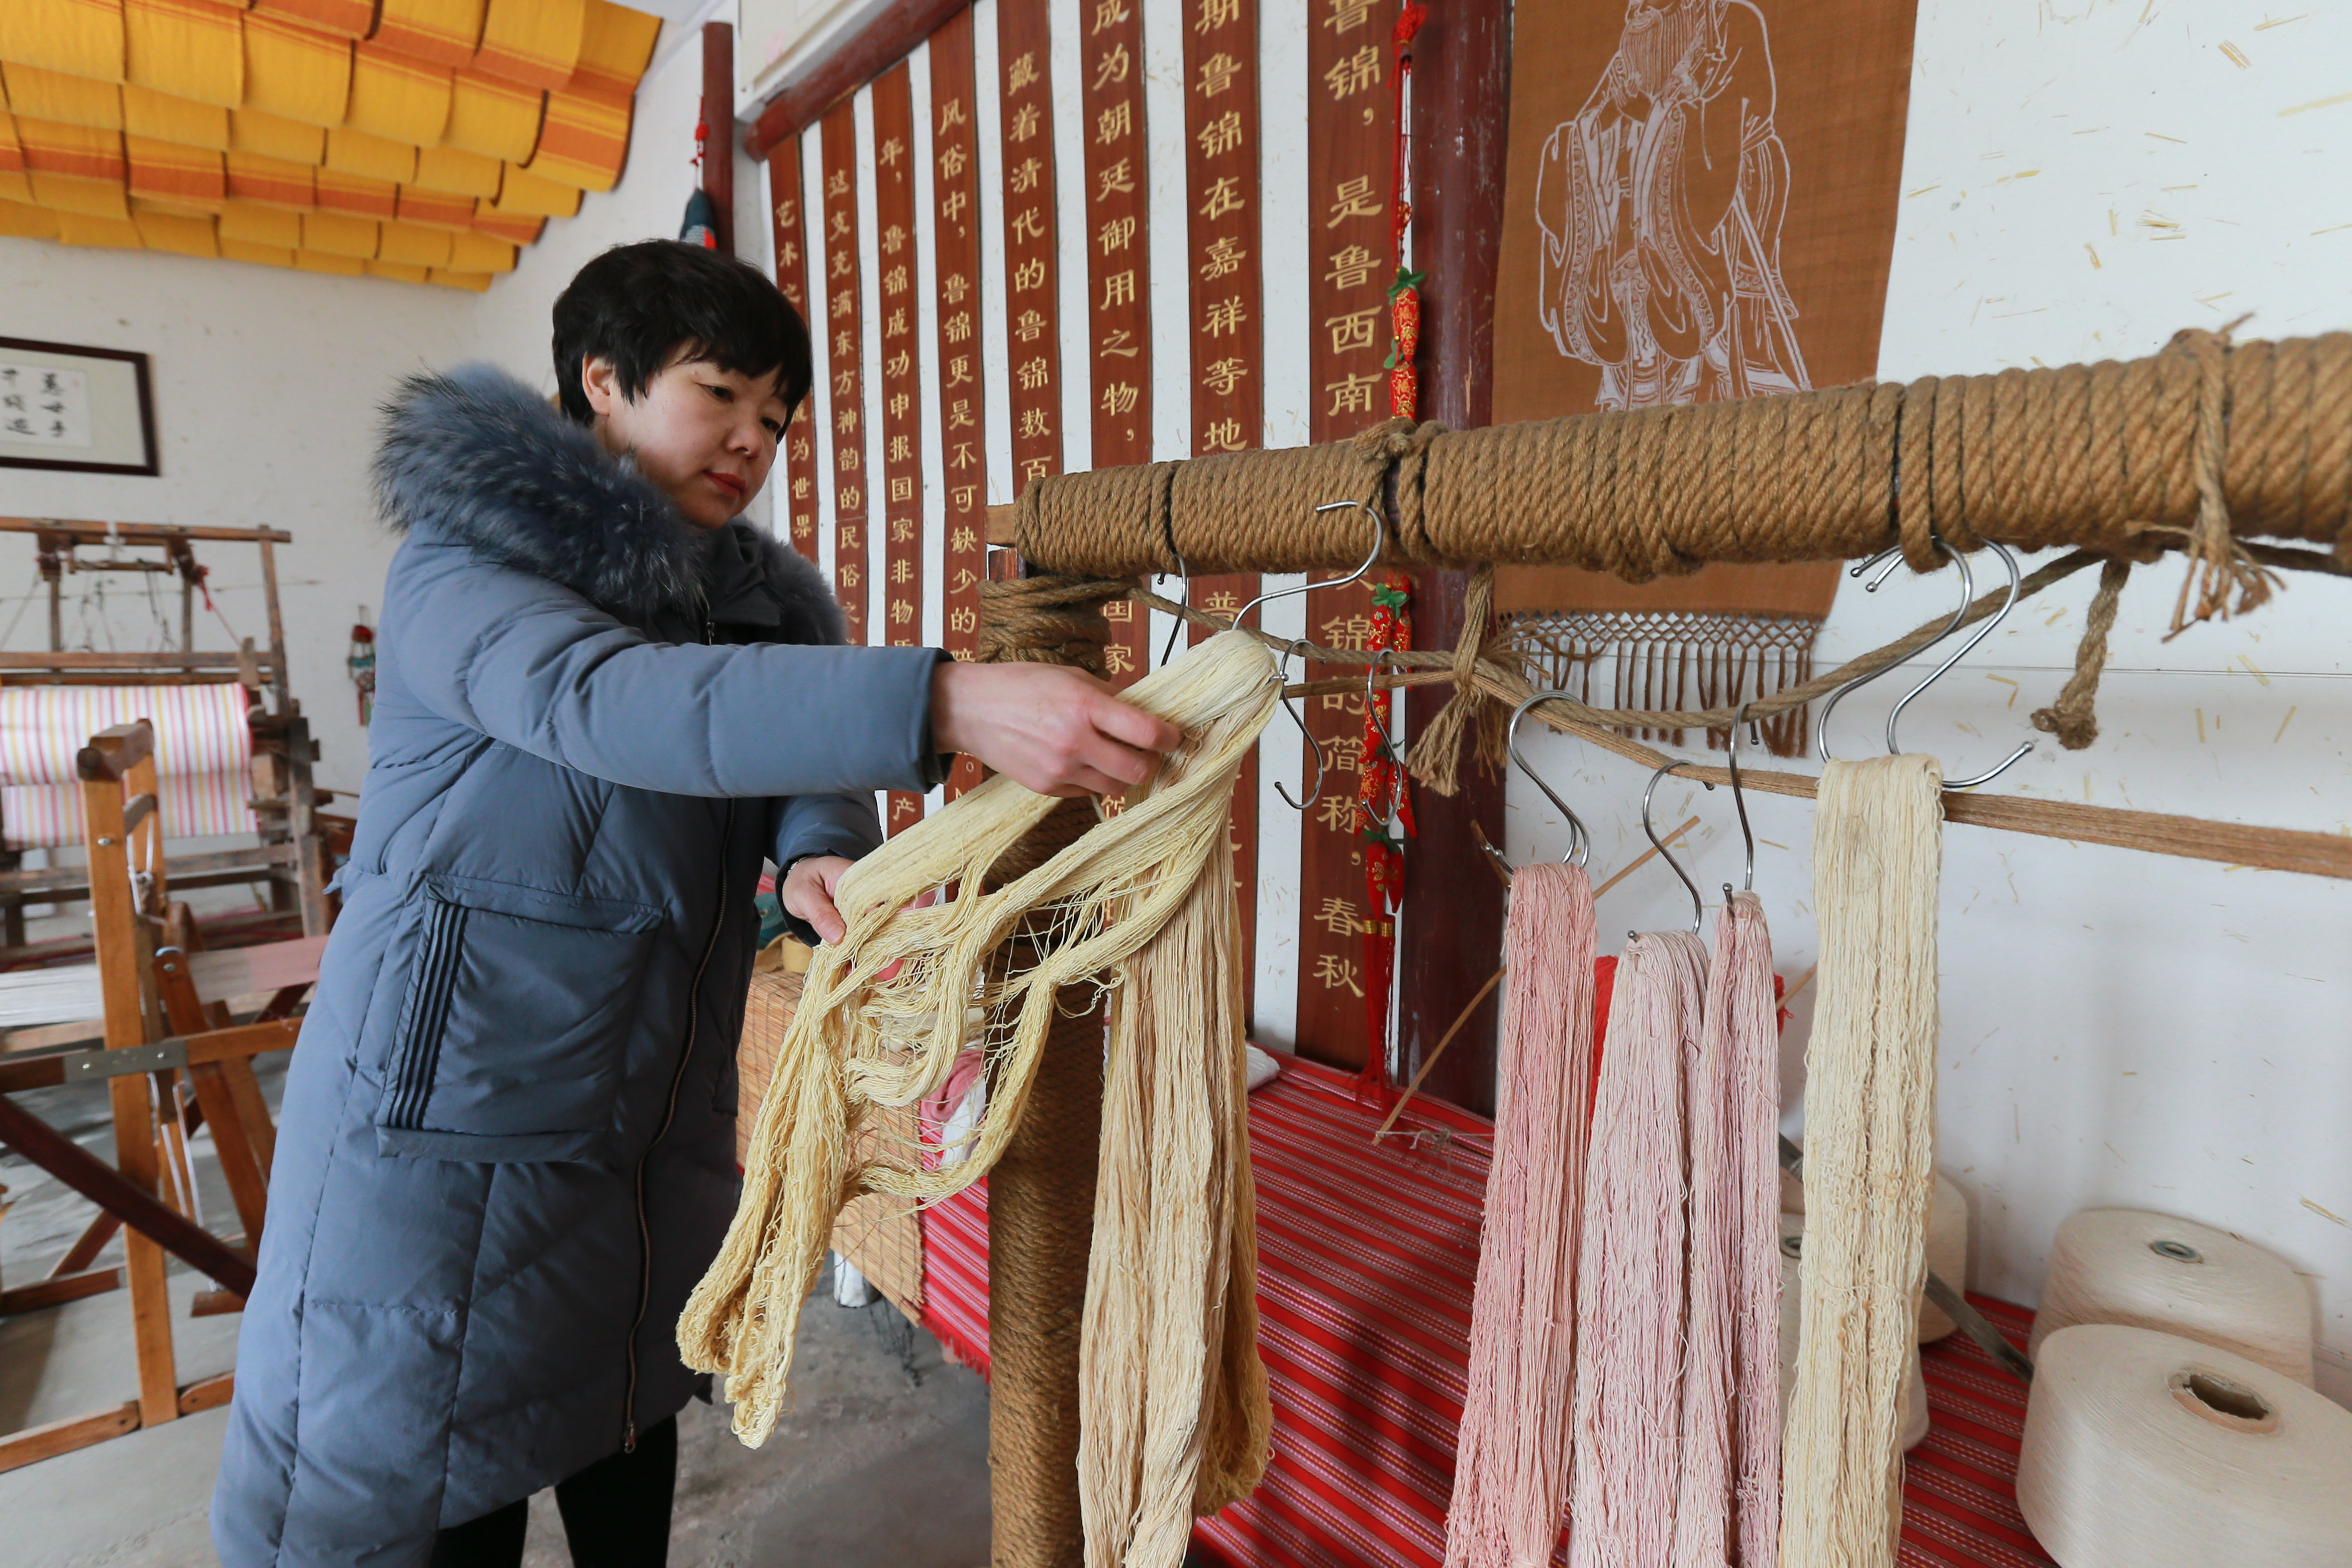 2月15日,在山东省济宁市嘉祥县一家鲁锦纺织企业,工人在整理晒干的